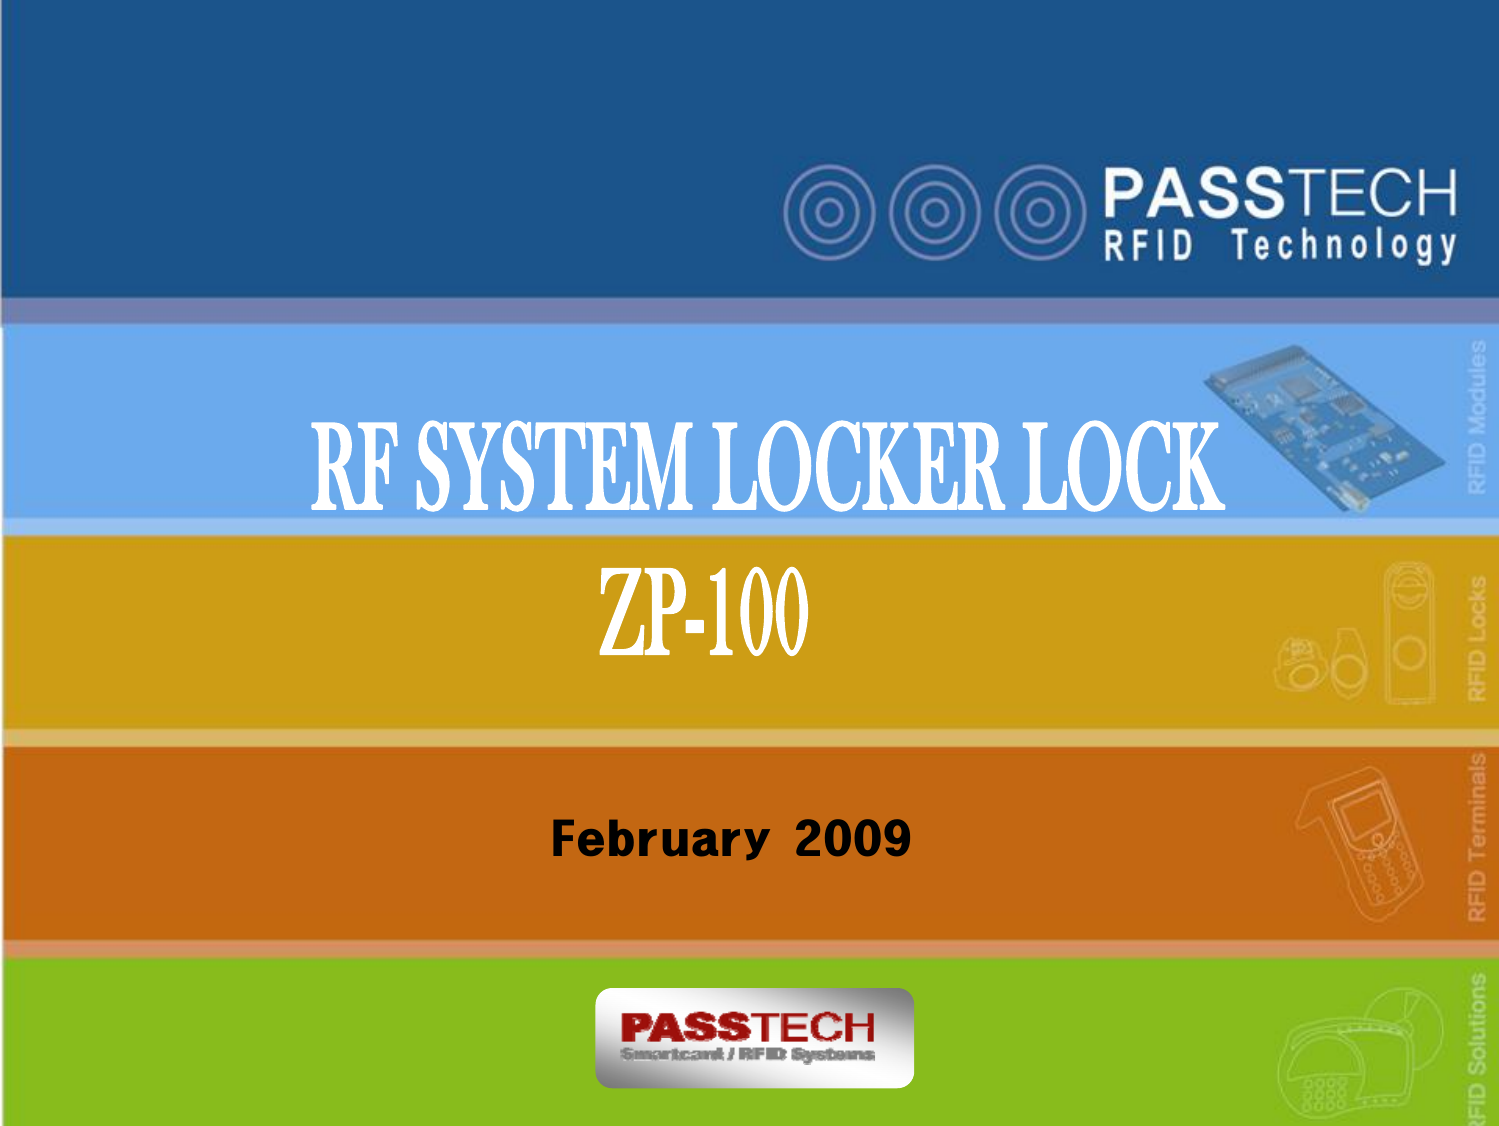 09-02-27 www.passtech.co.kr 1February 2009